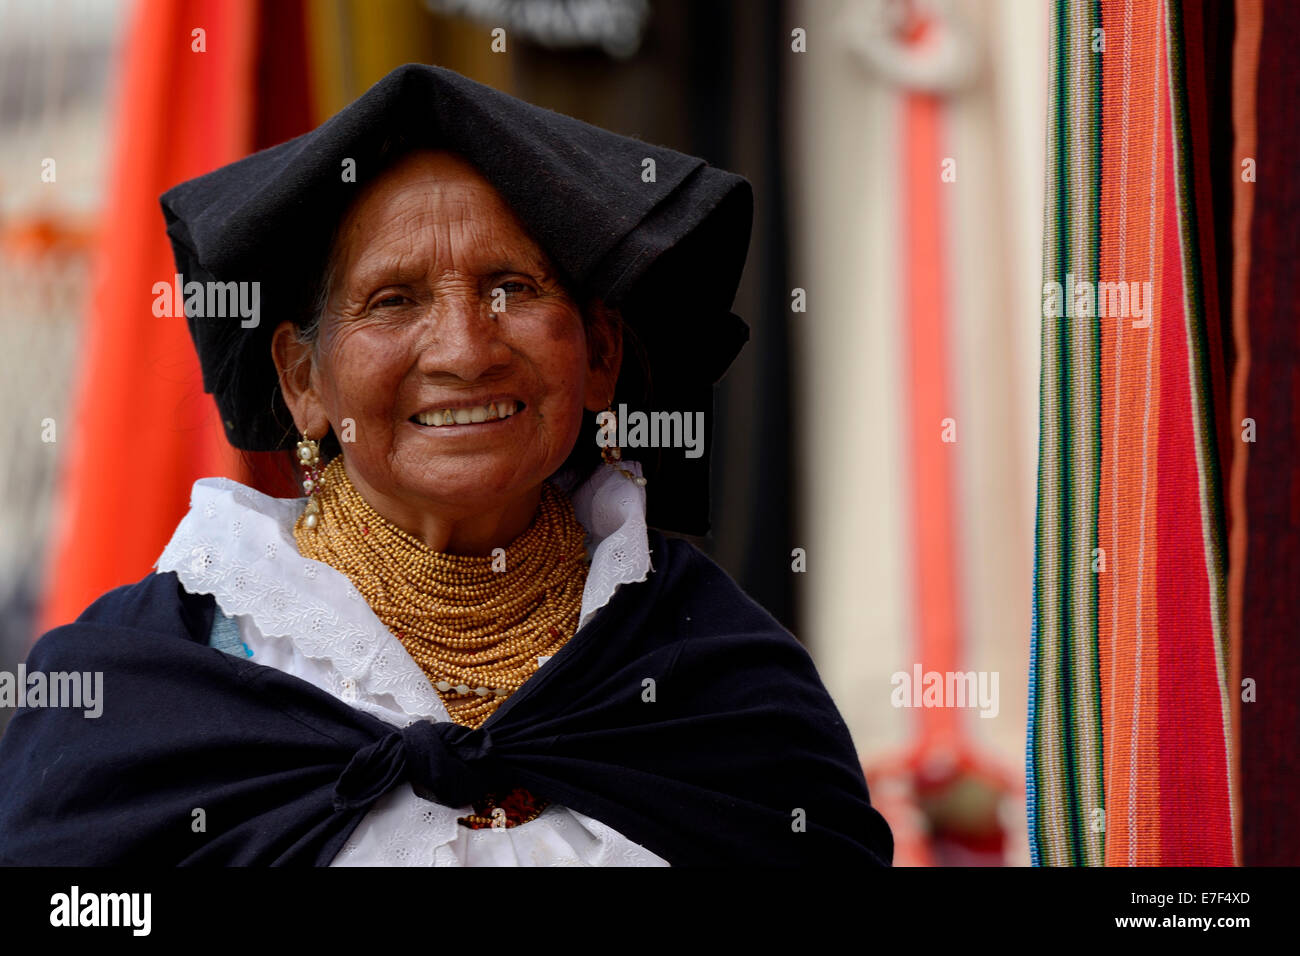 Mercado mujer vistiendo un traje tradicional de Ecuador, Quito, Ecuador, Sudamérica Foto de stock